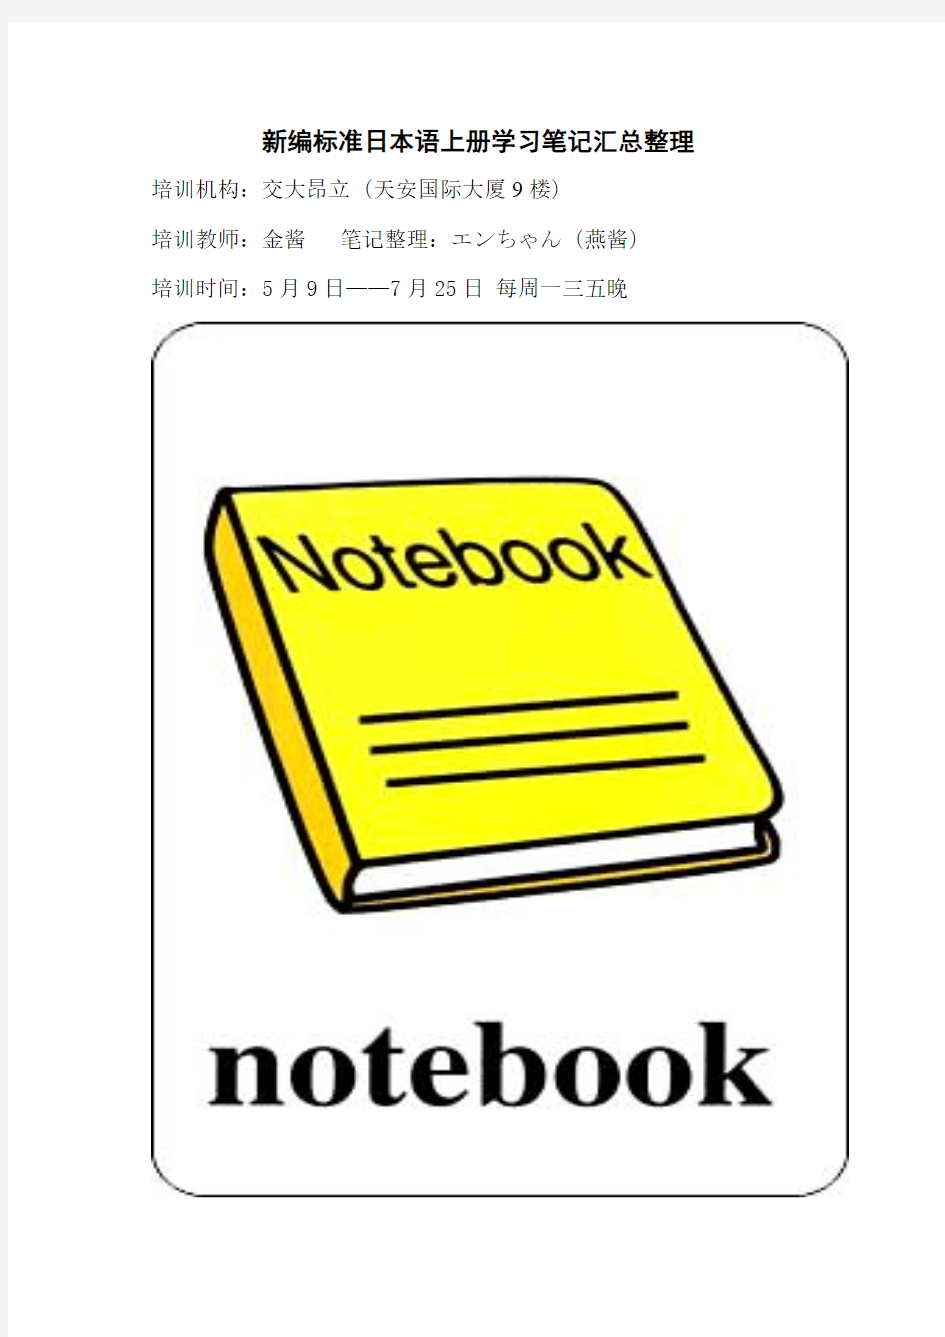 新编标准日本语上册学习笔记汇总整理